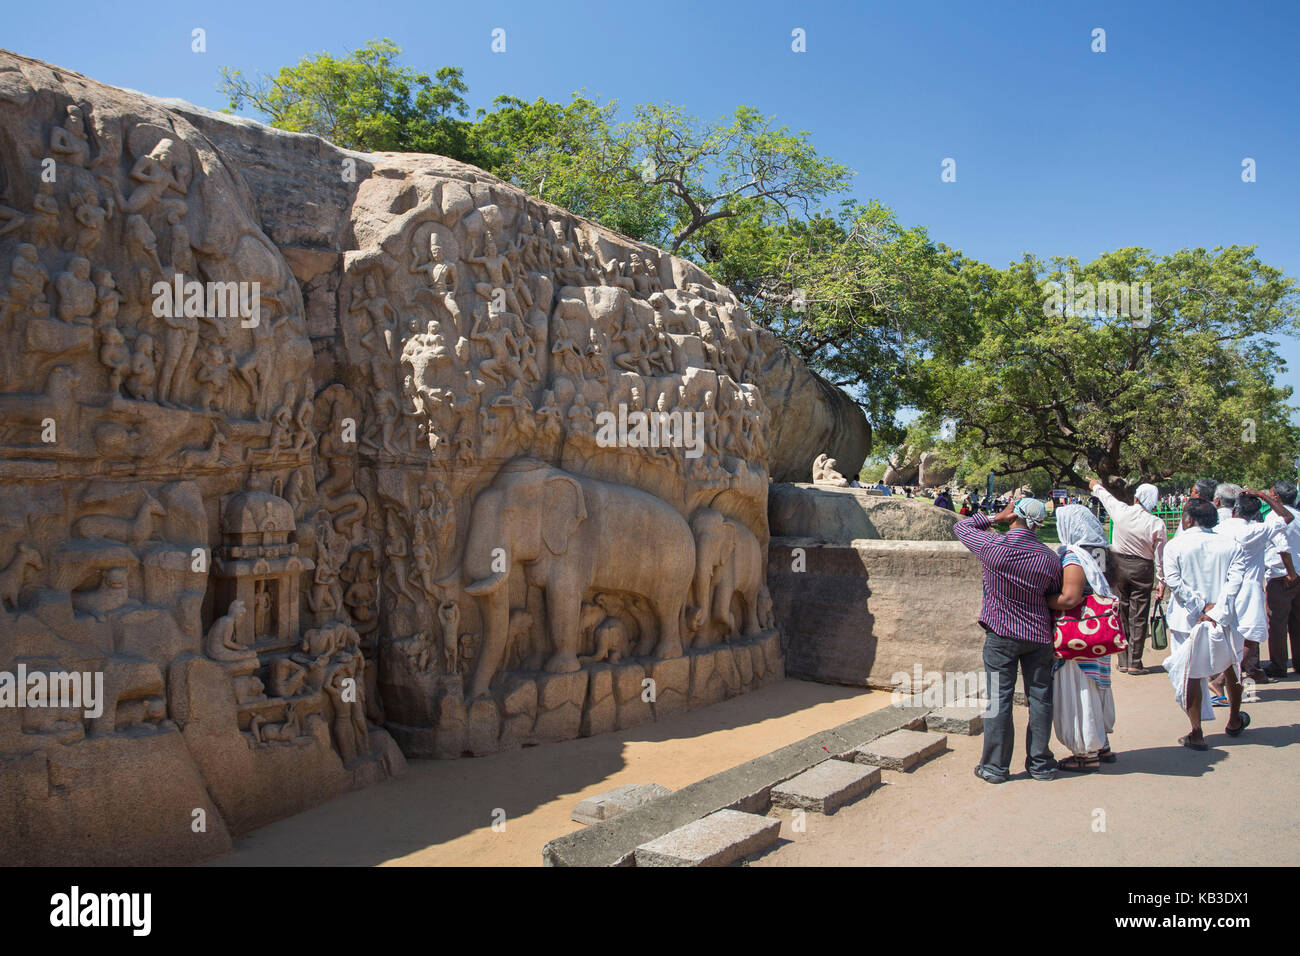 L'Inde, le Tamil Nadu, mamallapuram, mort de l'Arjuna, rock art, bas-relief Banque D'Images